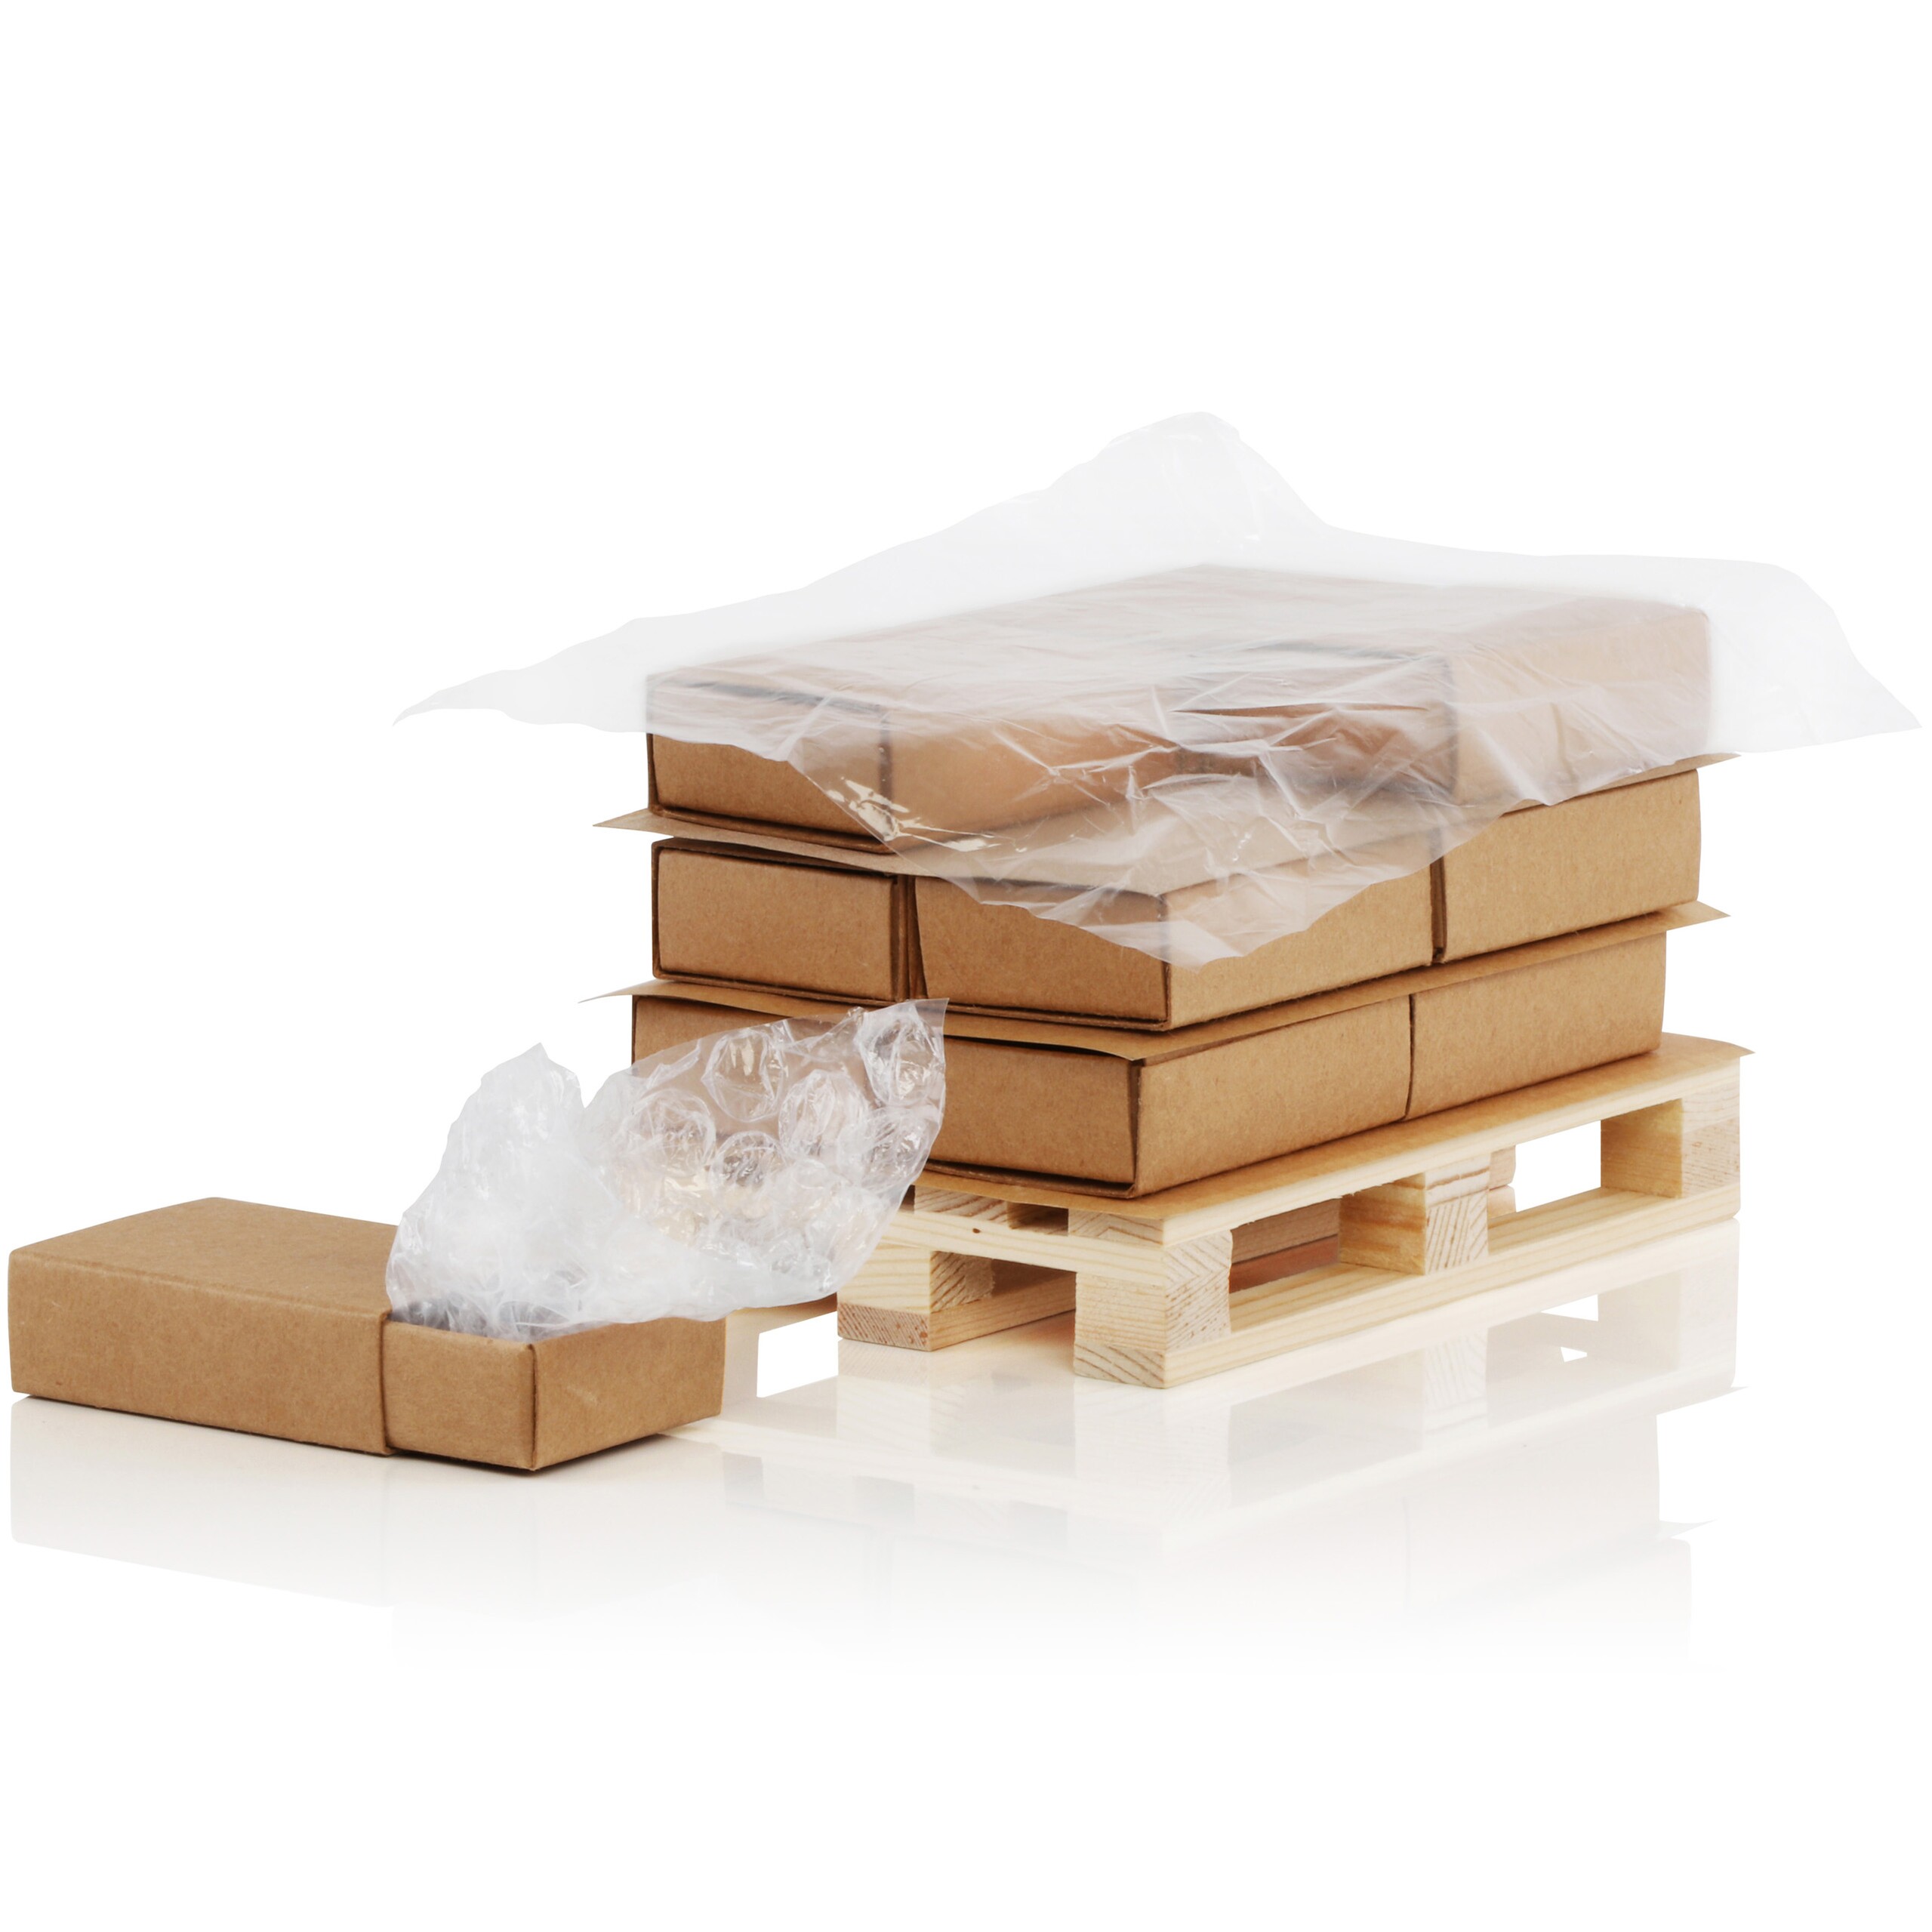 Palette mit drei Schachtelreihen, bestückt mit Antirutschmatten, Deckblattfolie und eine Schachtel mit Luftpolsterfolie.